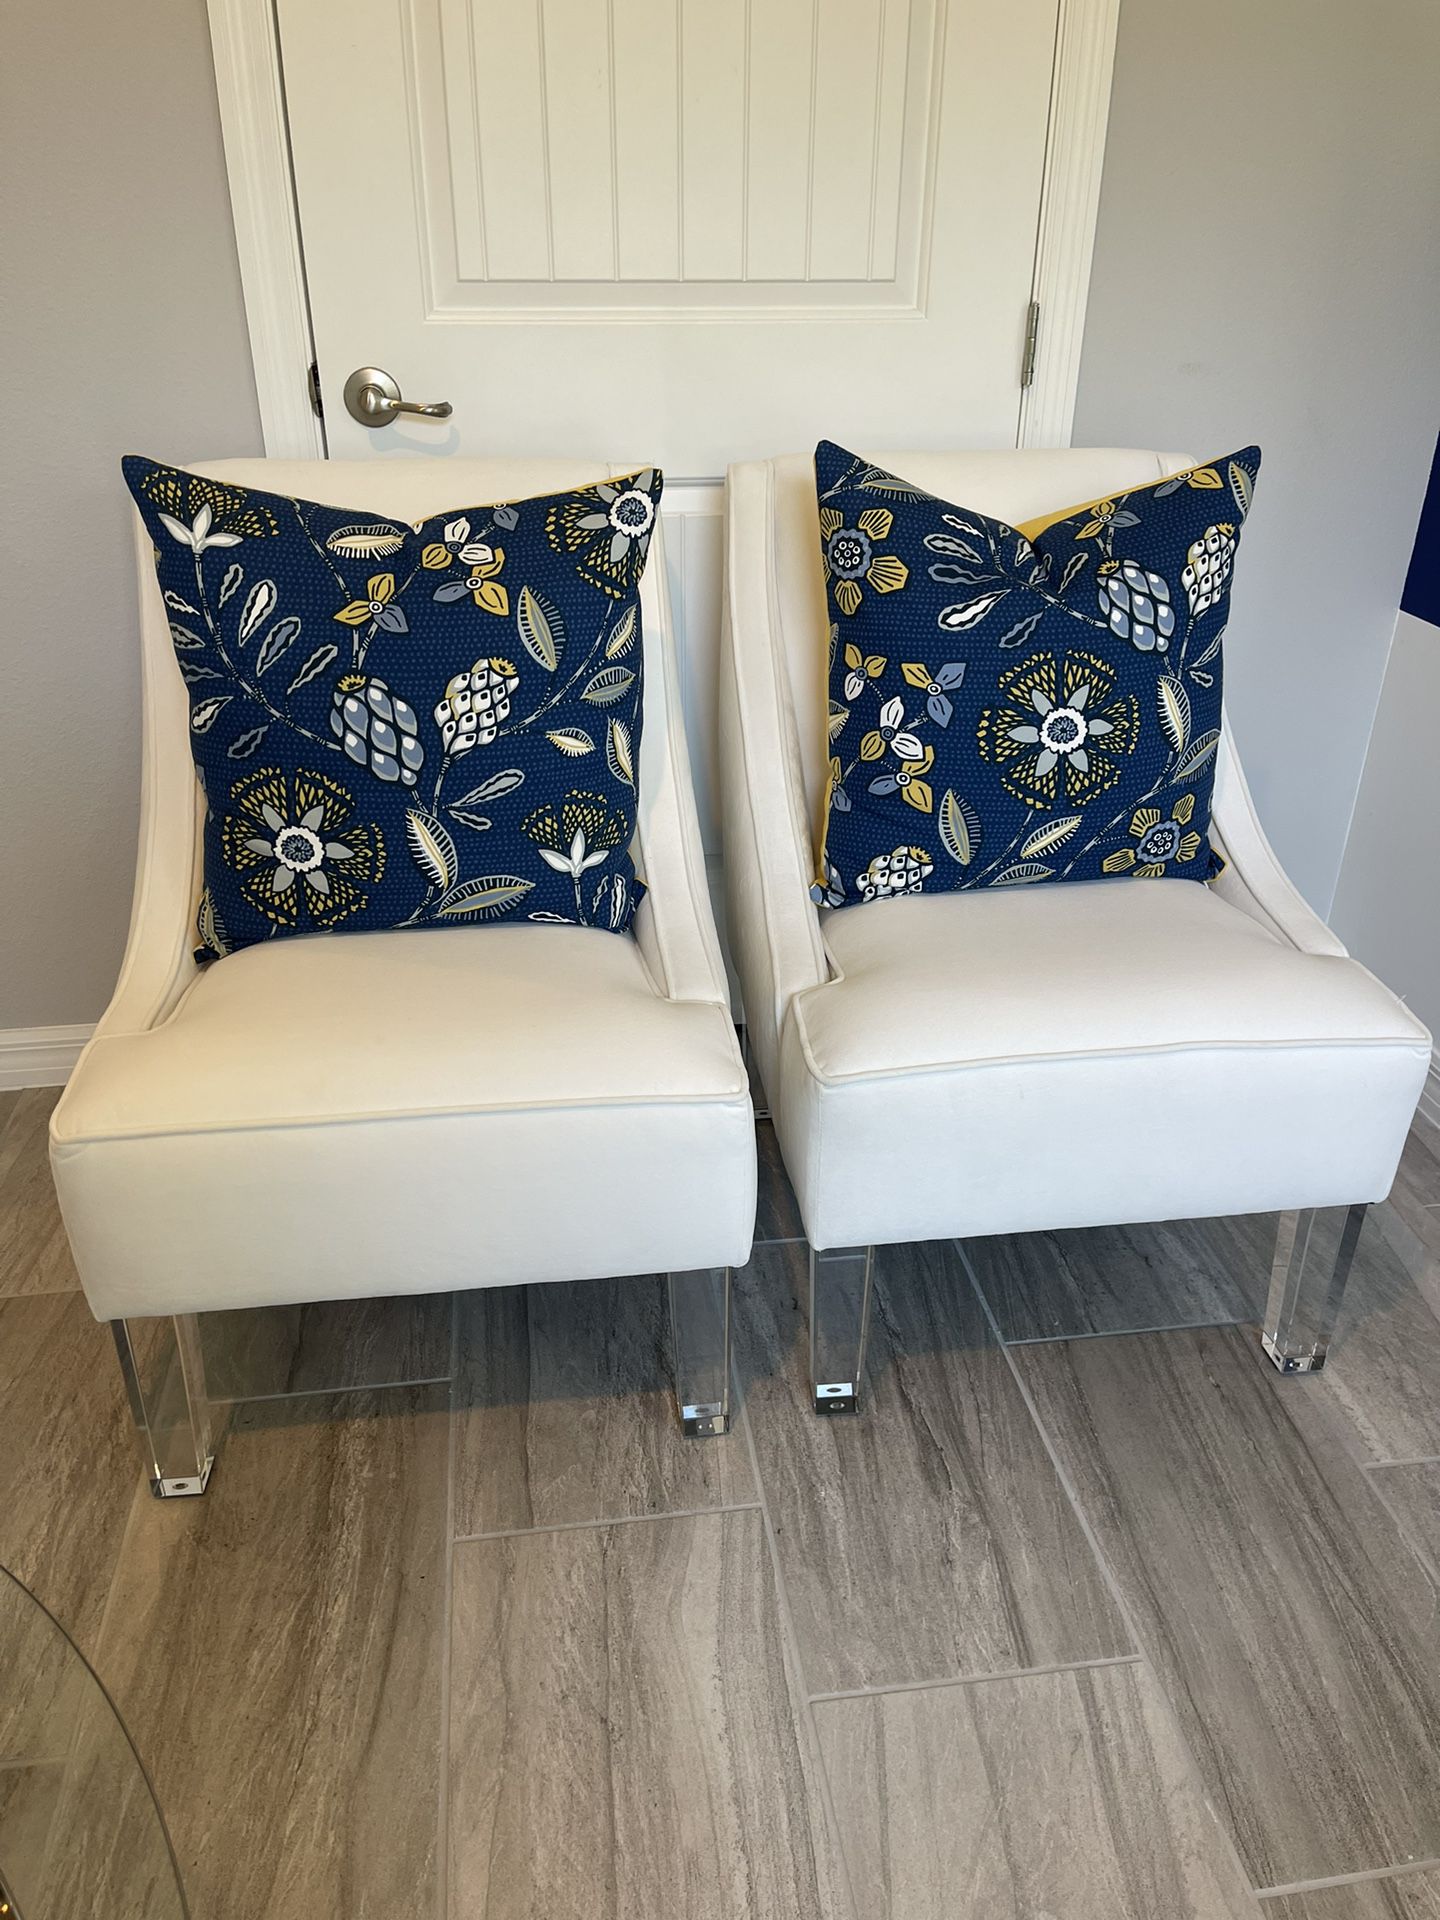 Pair White Decor Chairs w/ Decor Pillows